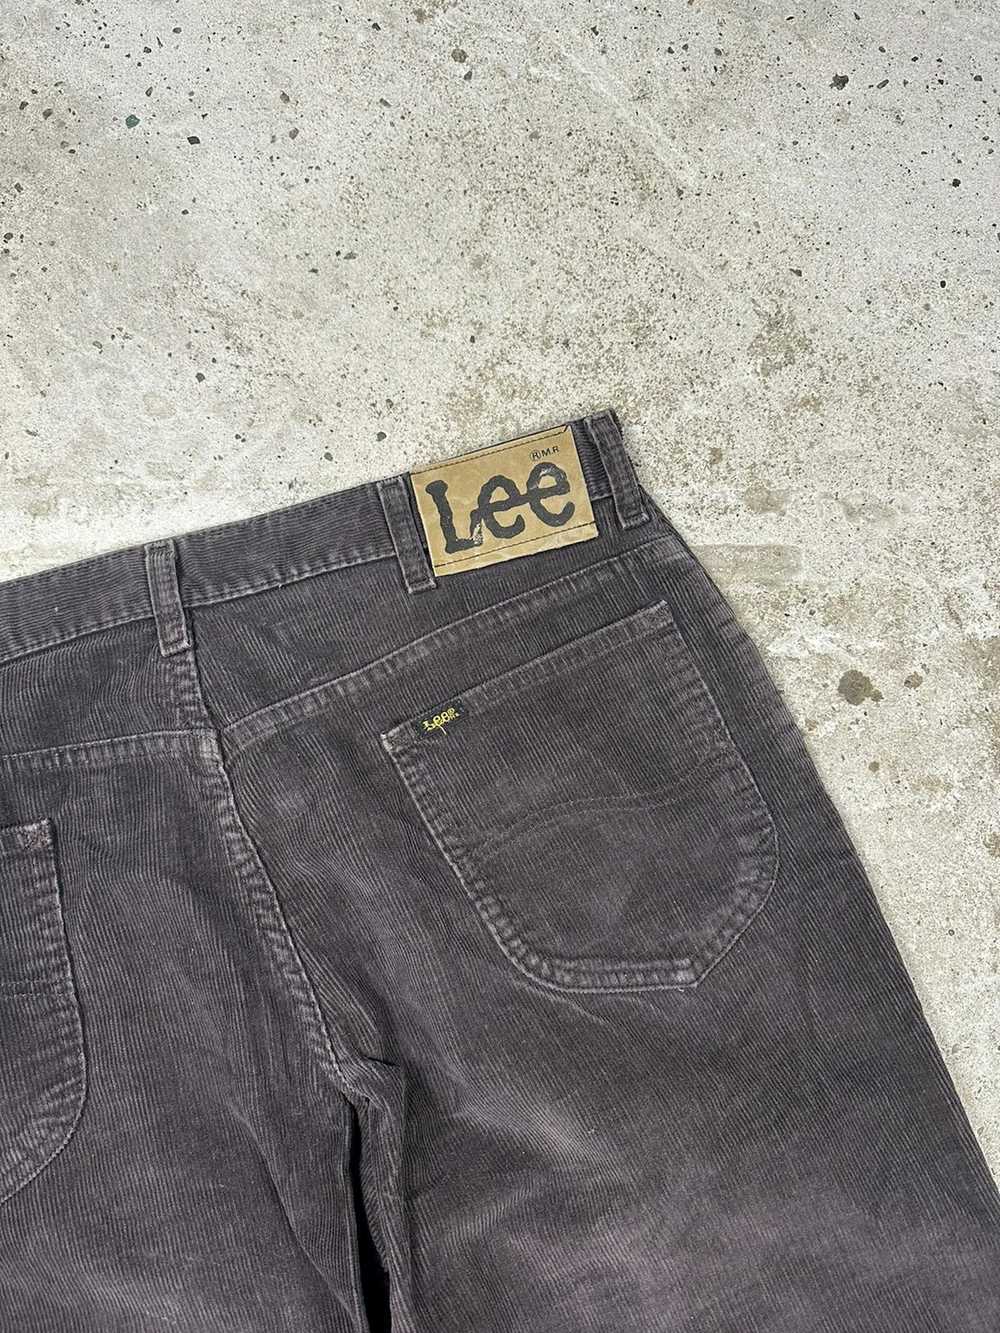 Lee × Made In Usa × Vintage Vintage 70s Lee Brown… - image 12